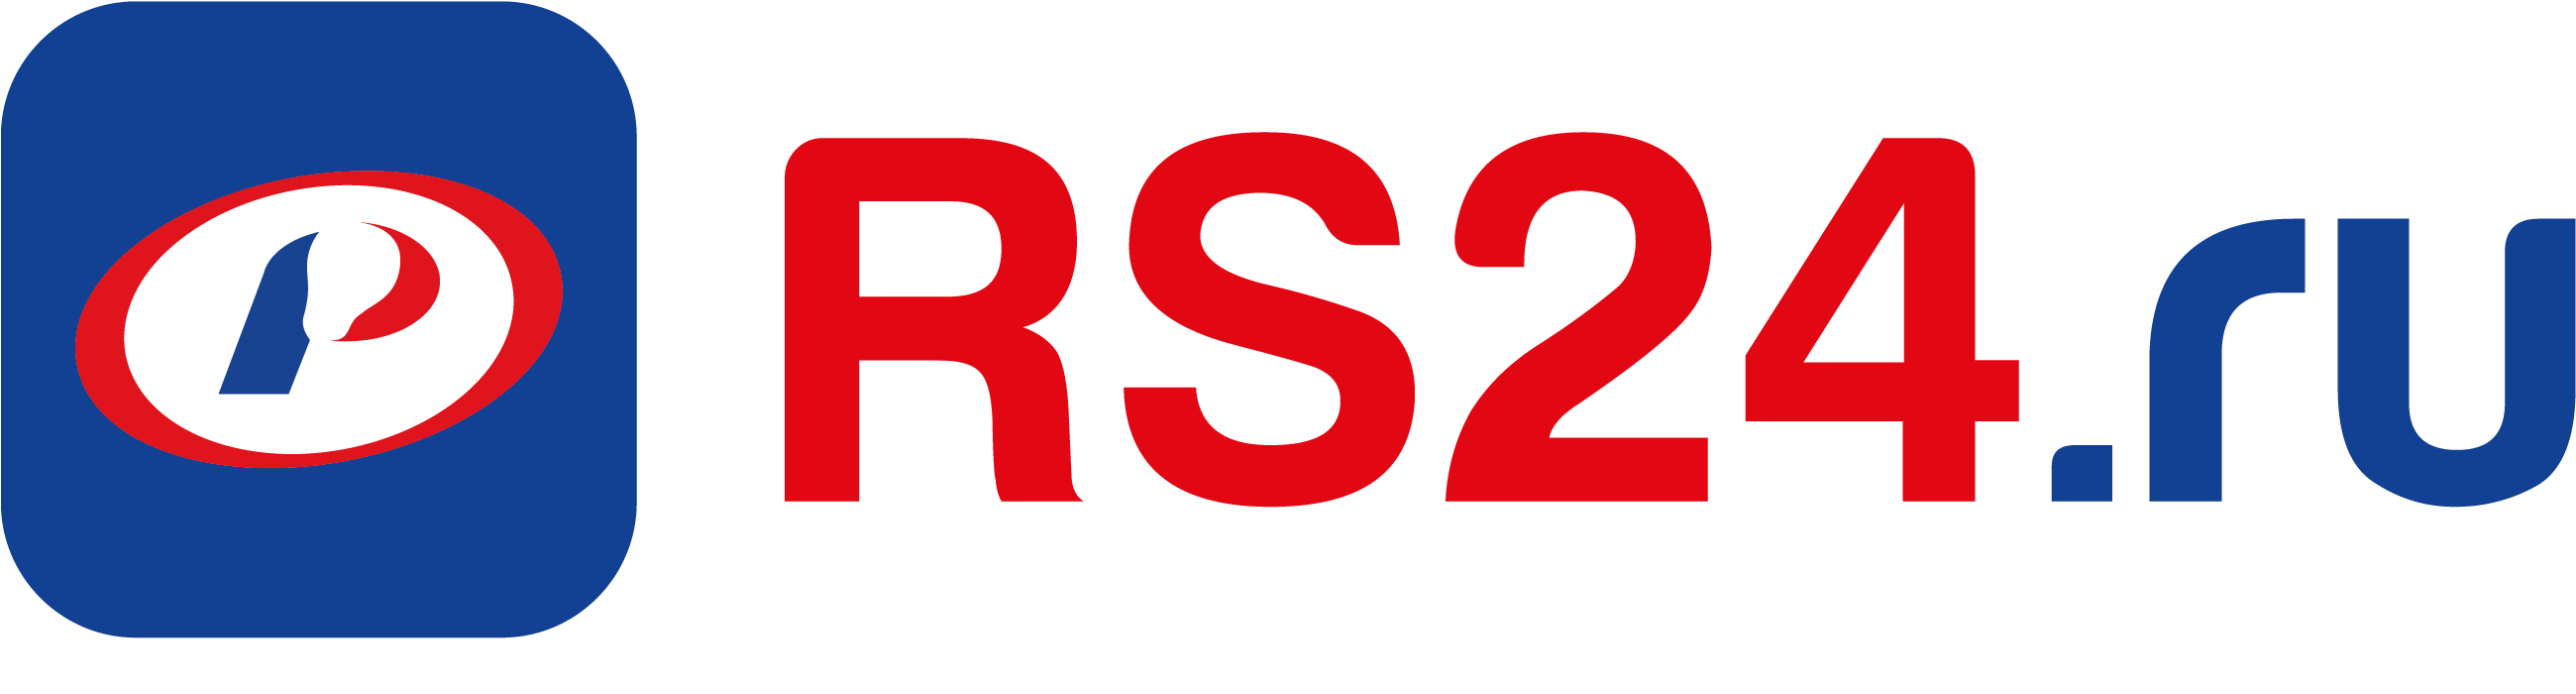 Русское 24. Русский свет логотип. Rs24. RS 24 русский свет. Rs24 логотип.